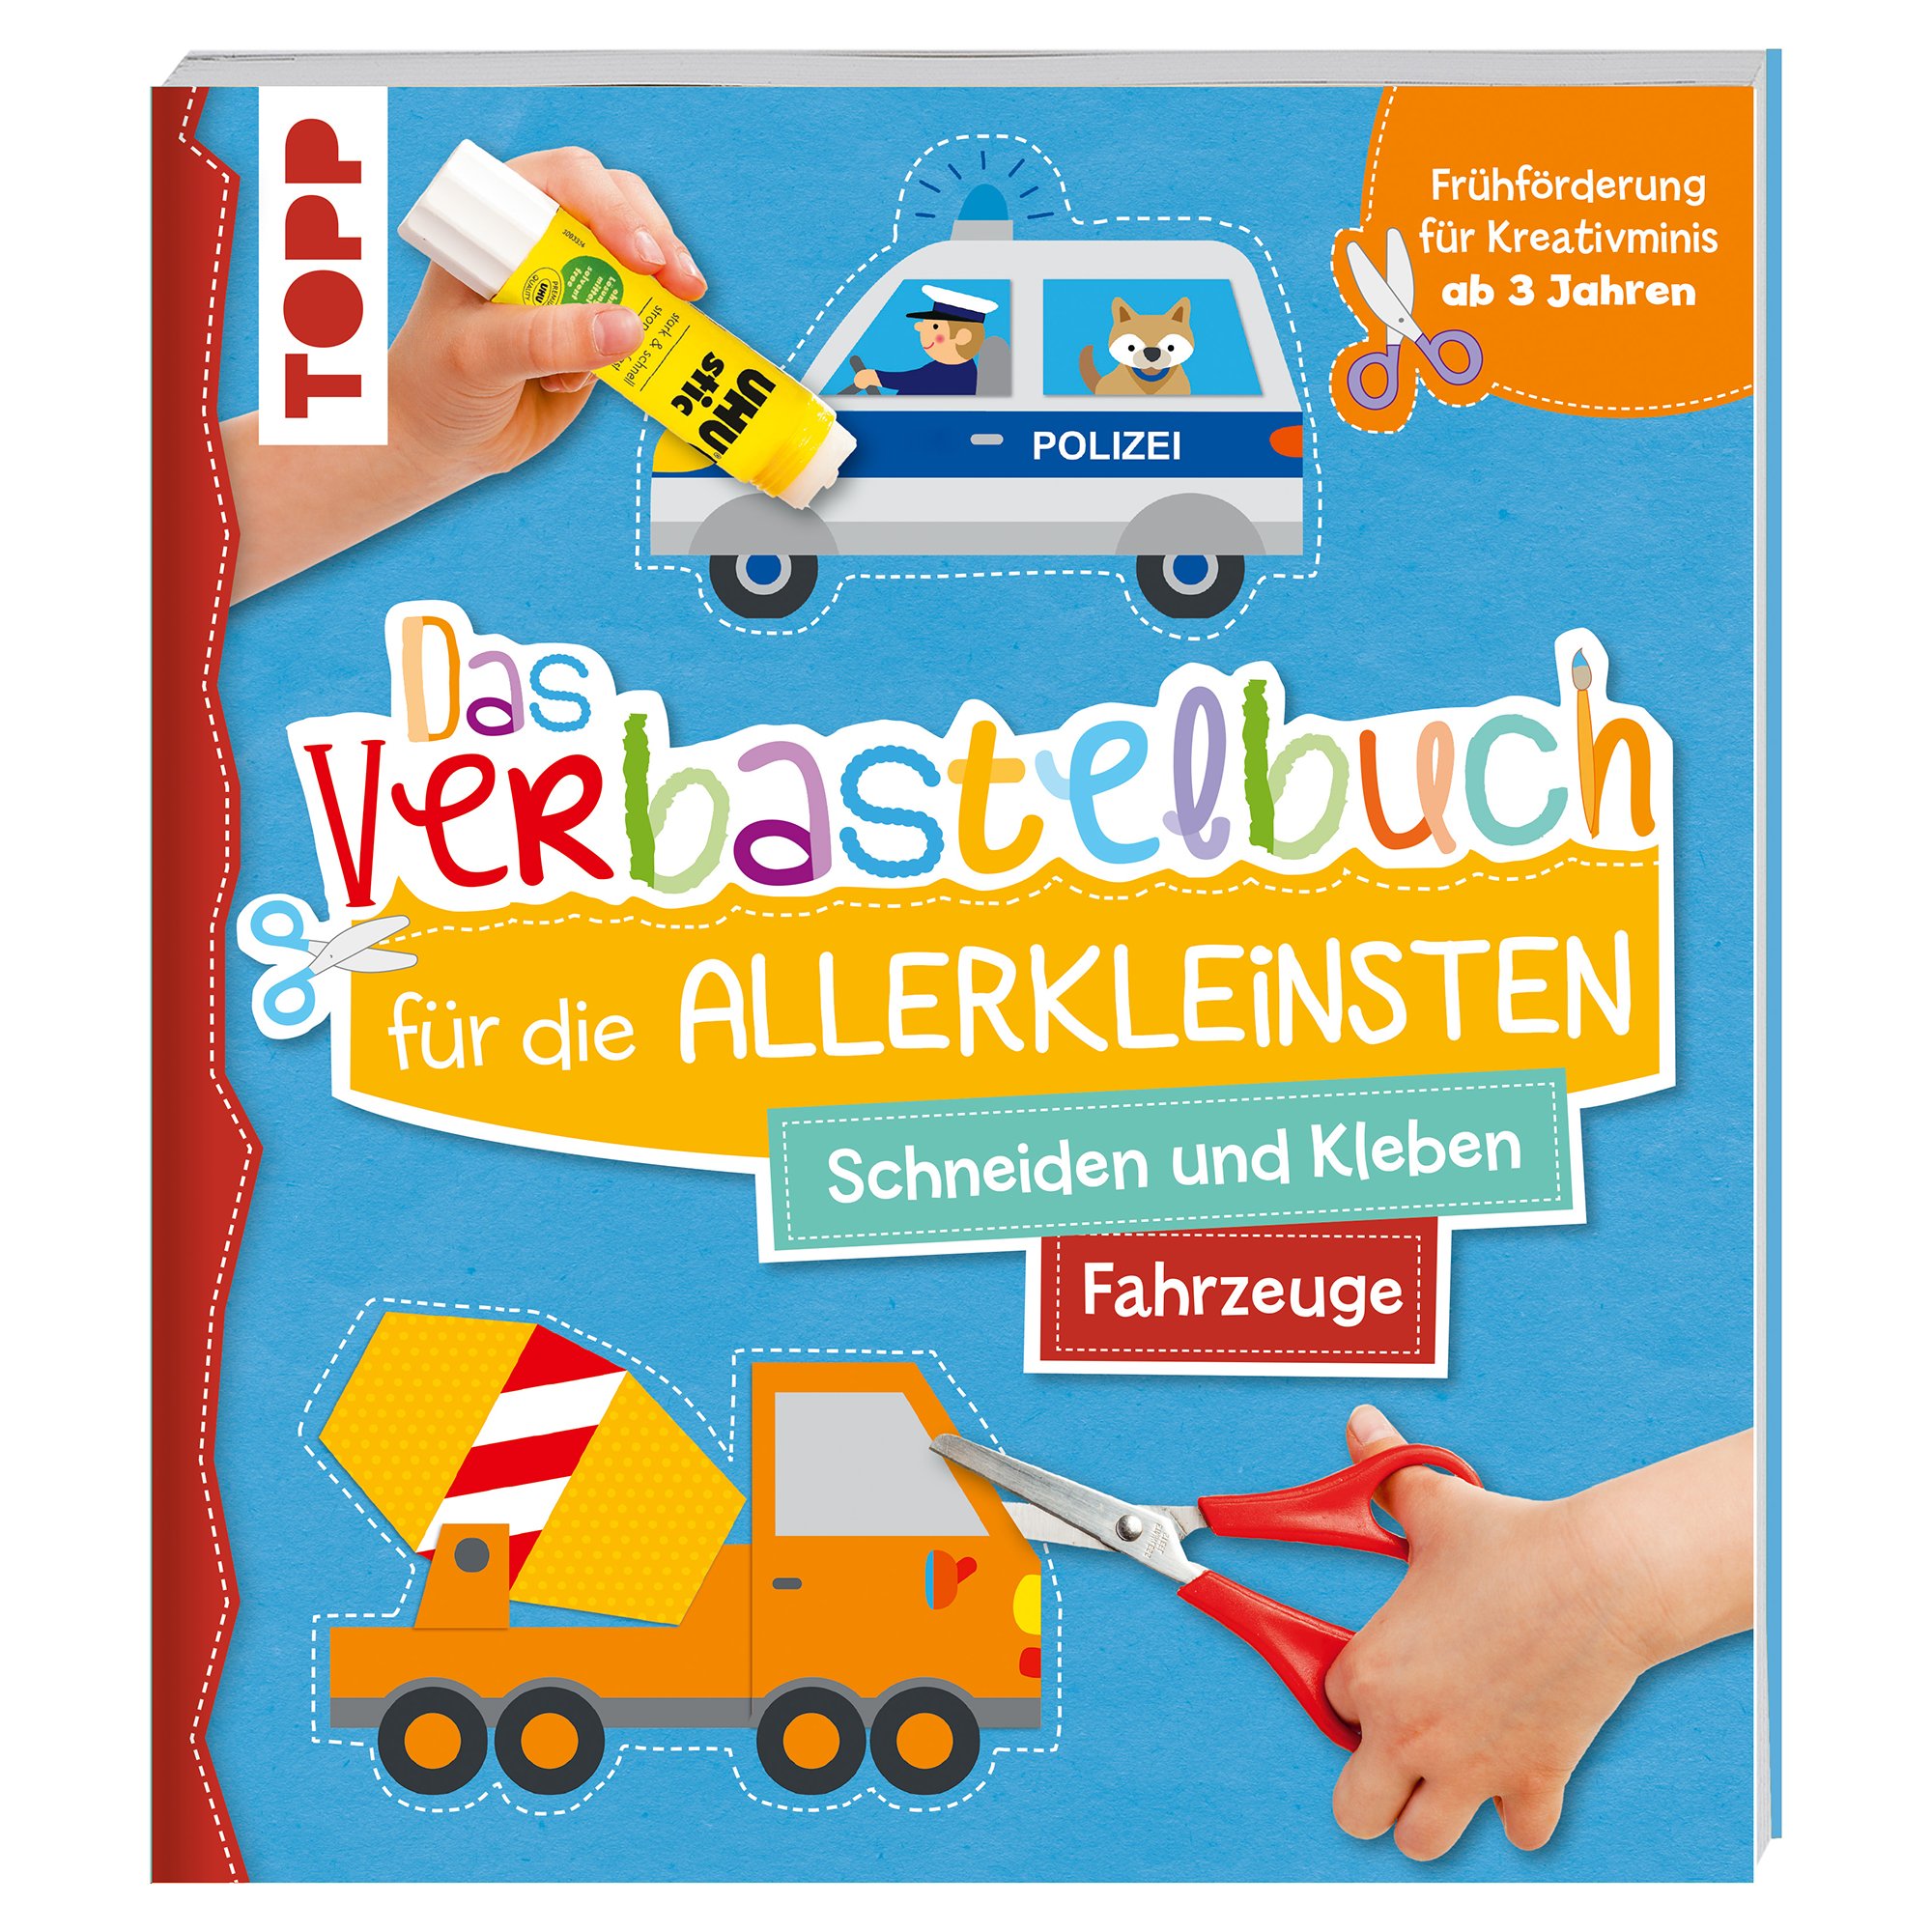 Das Verbastelbuch für die Allerkleinsten - Fahrzeuge frechverlag 2000584477708 1